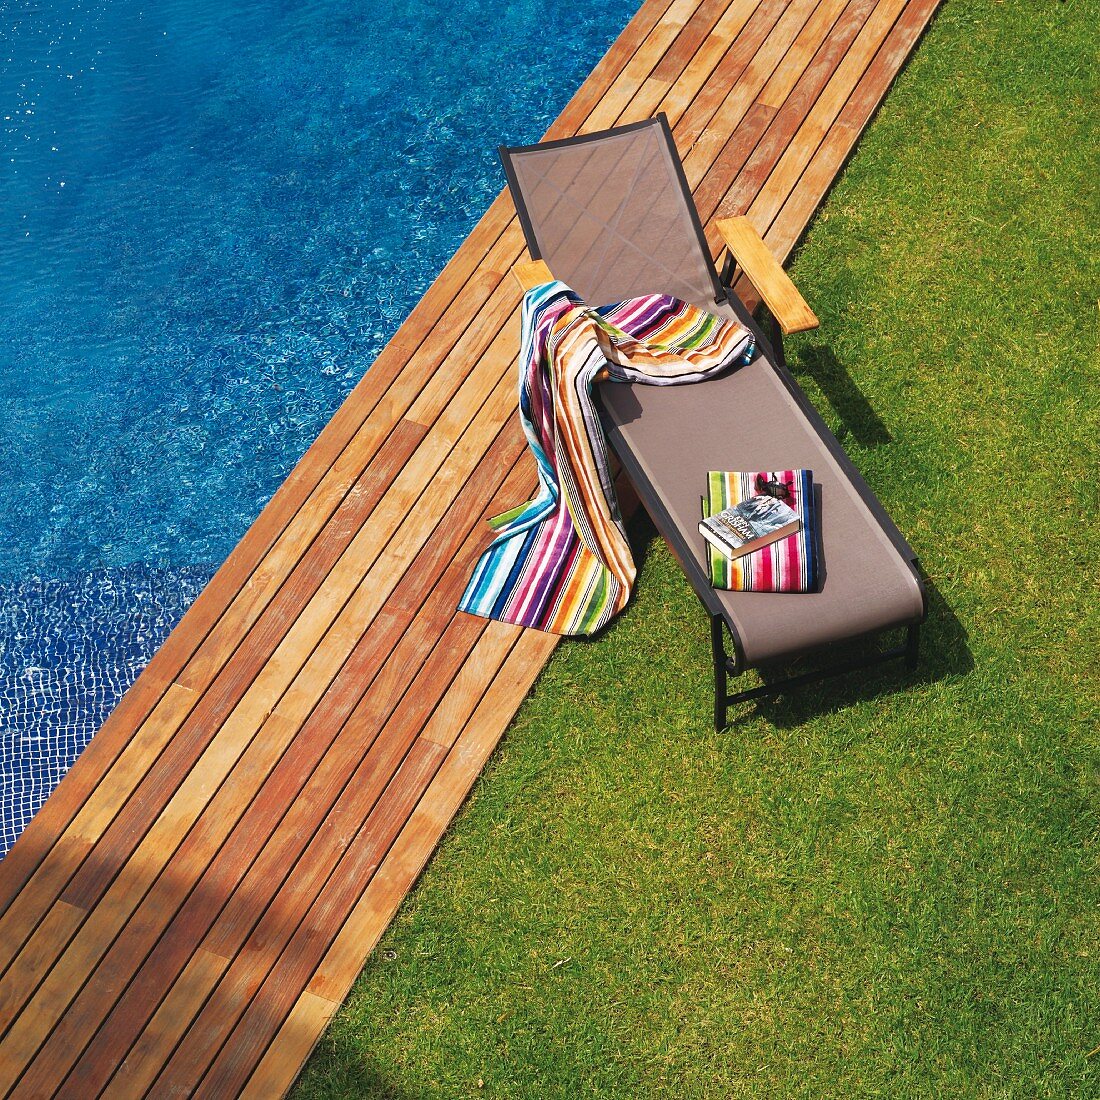 Rasen und Holzdeck an Poolrand mit bunt gestreiften Badetücher auf moderner Sonnenliege